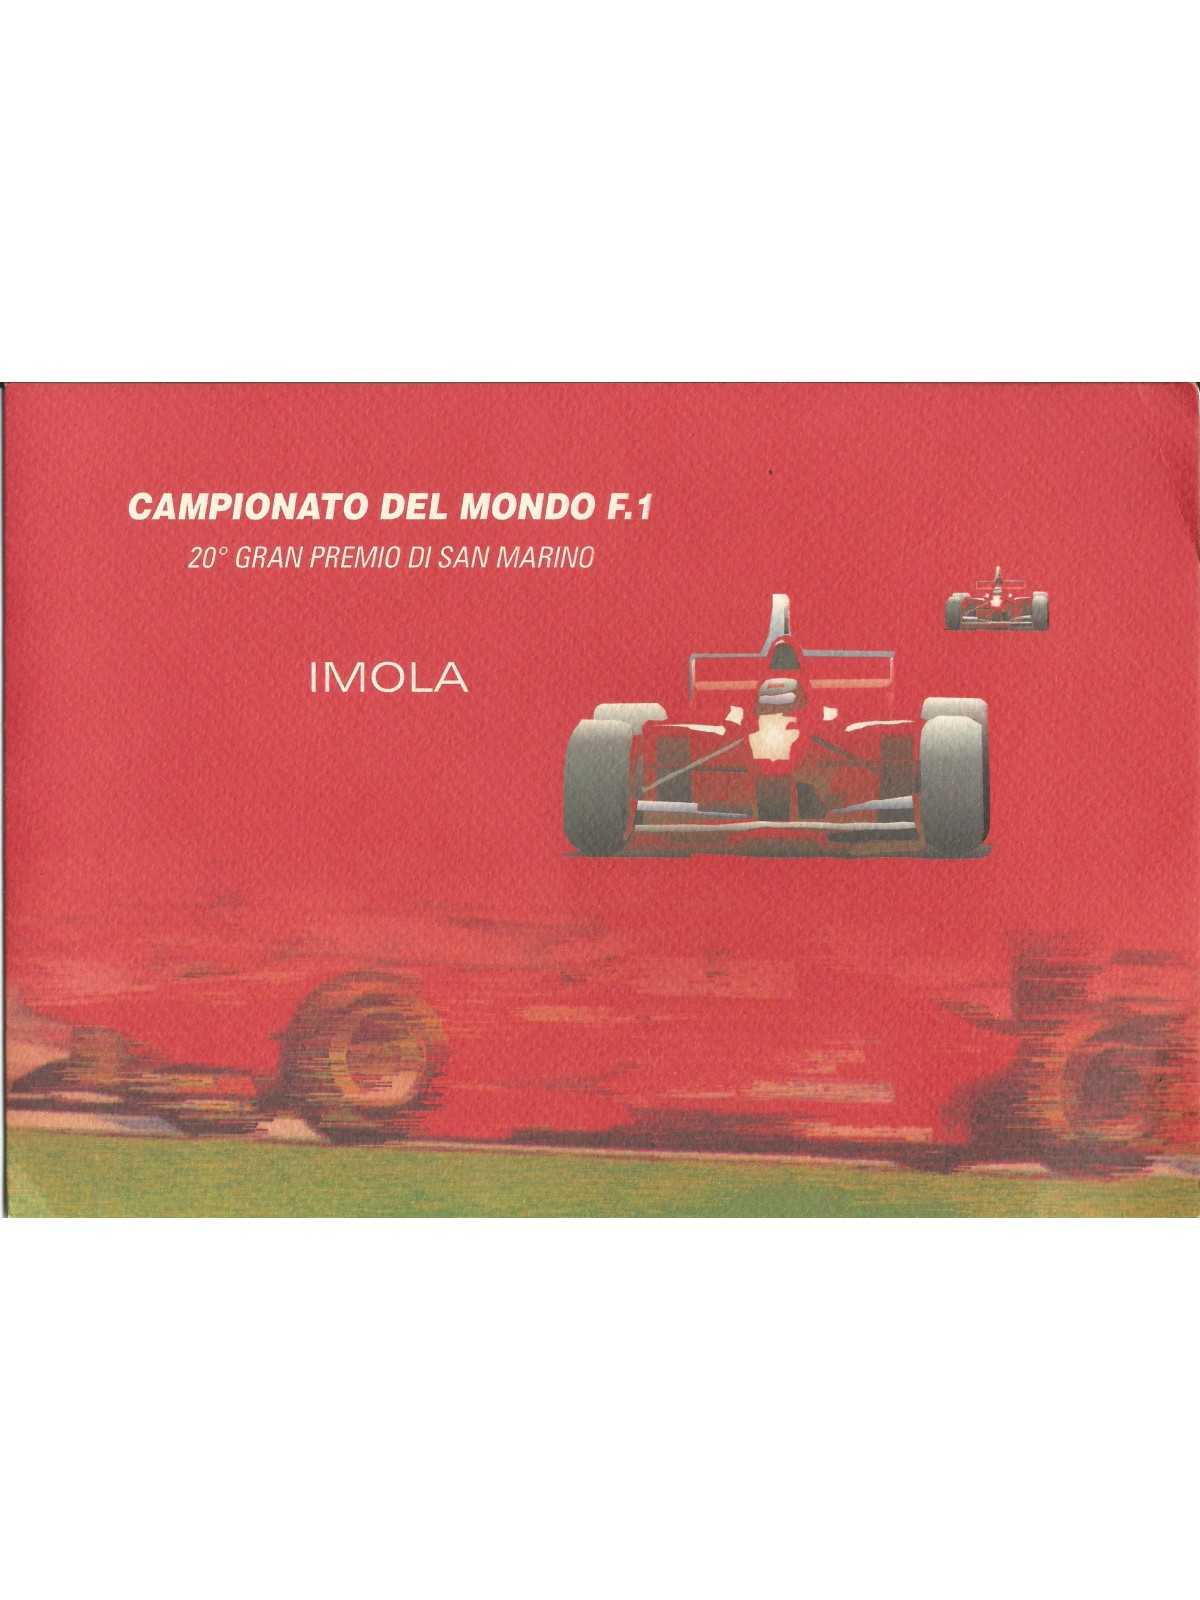 2000 ITALIA REPUBBLICA FOLDER CAMPIONATO DEL MONDO DI F1 IMOLA MF26844